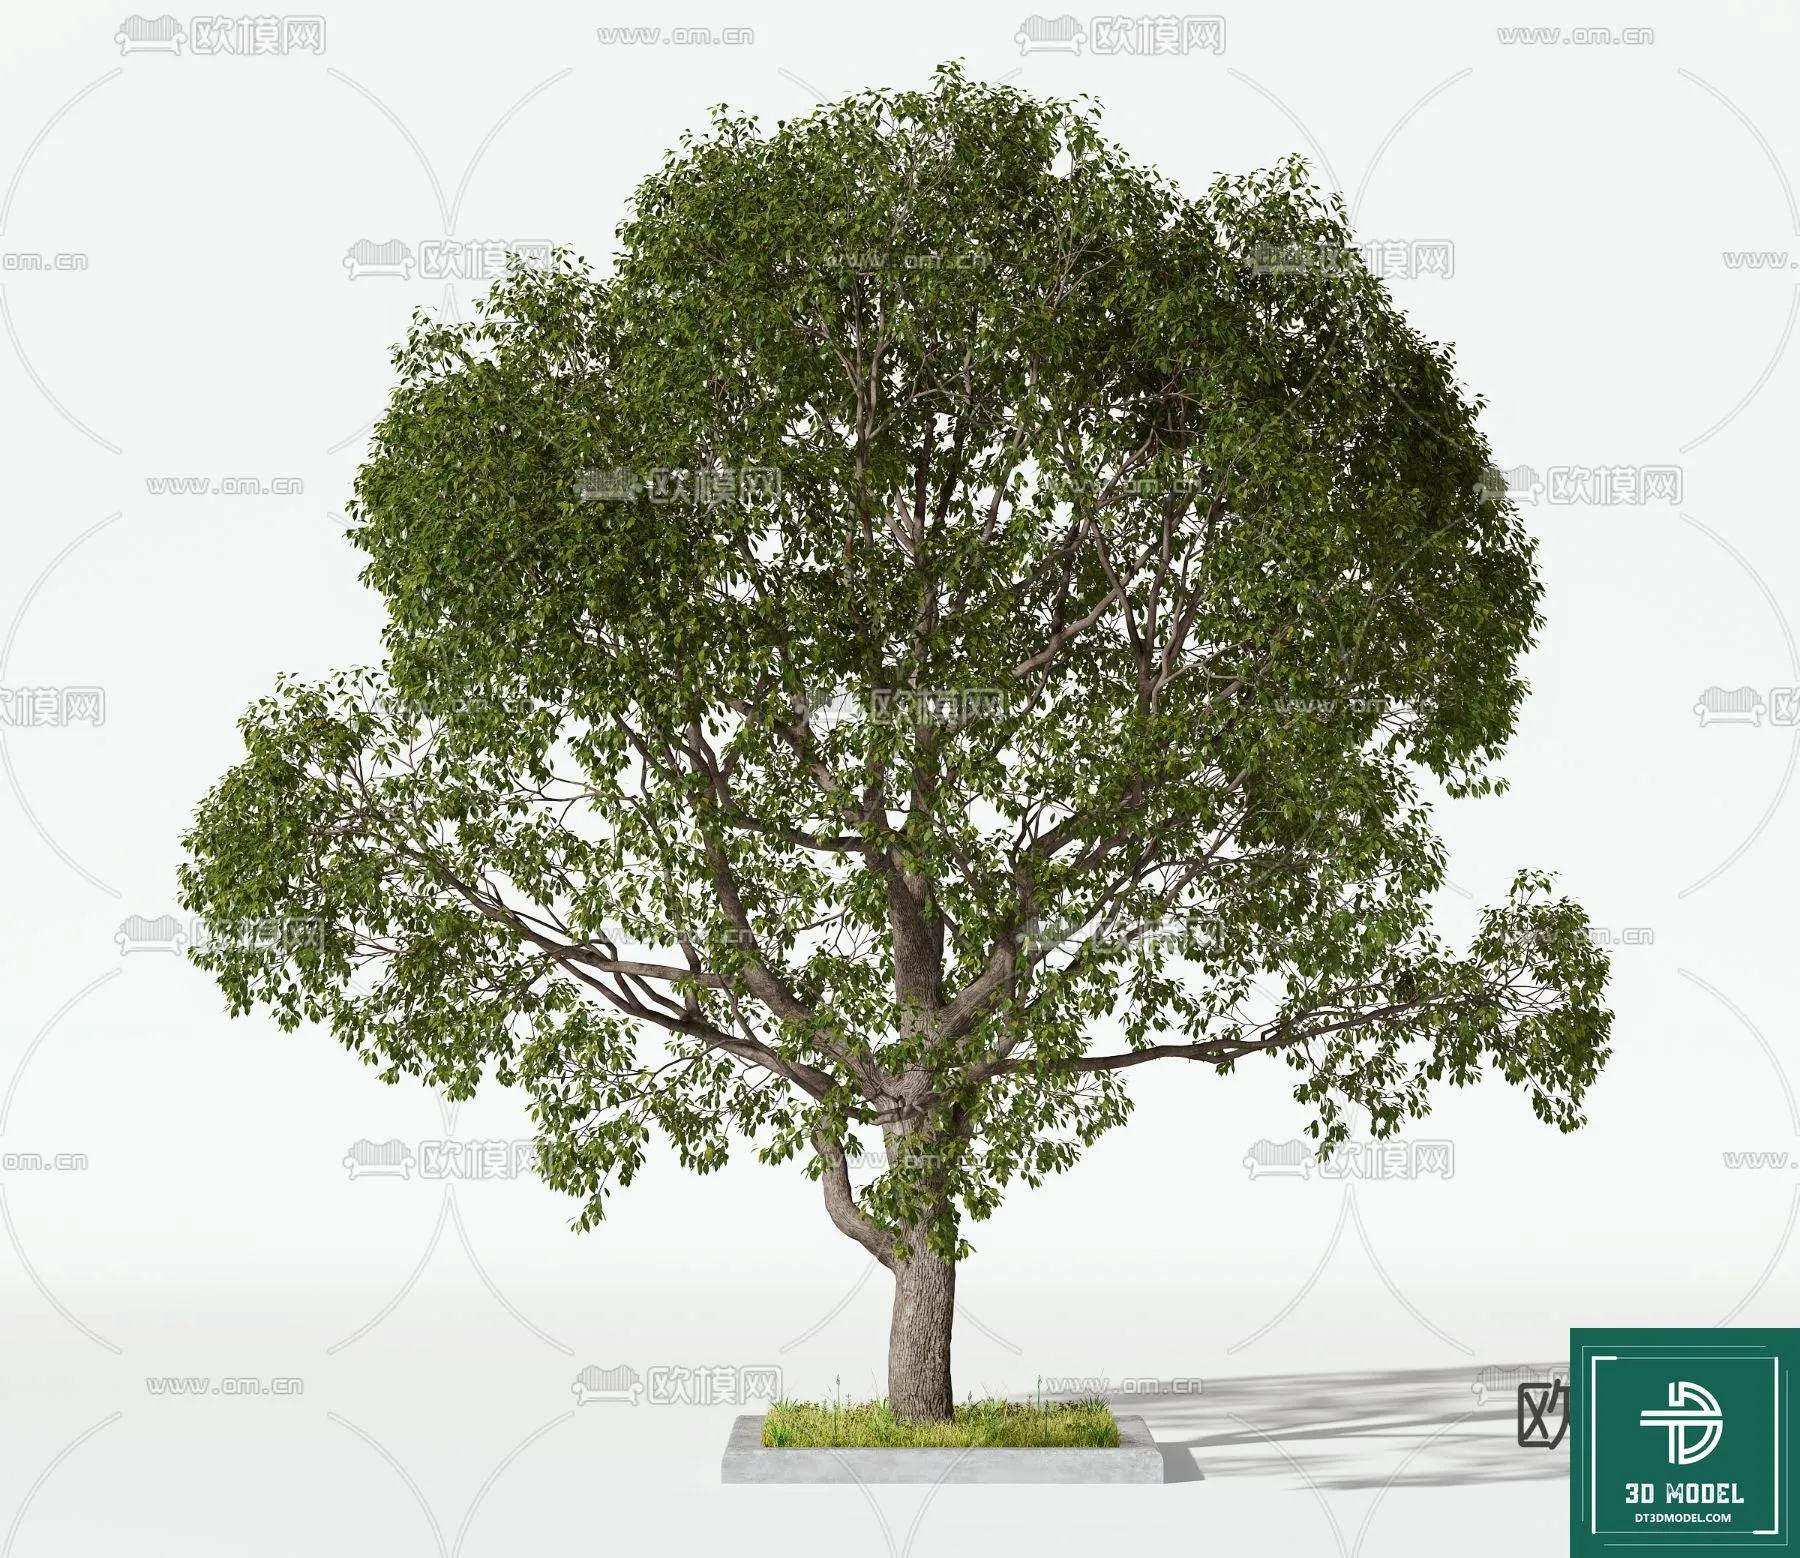 EXTERIOR – TREE – 3D MODELS – 085